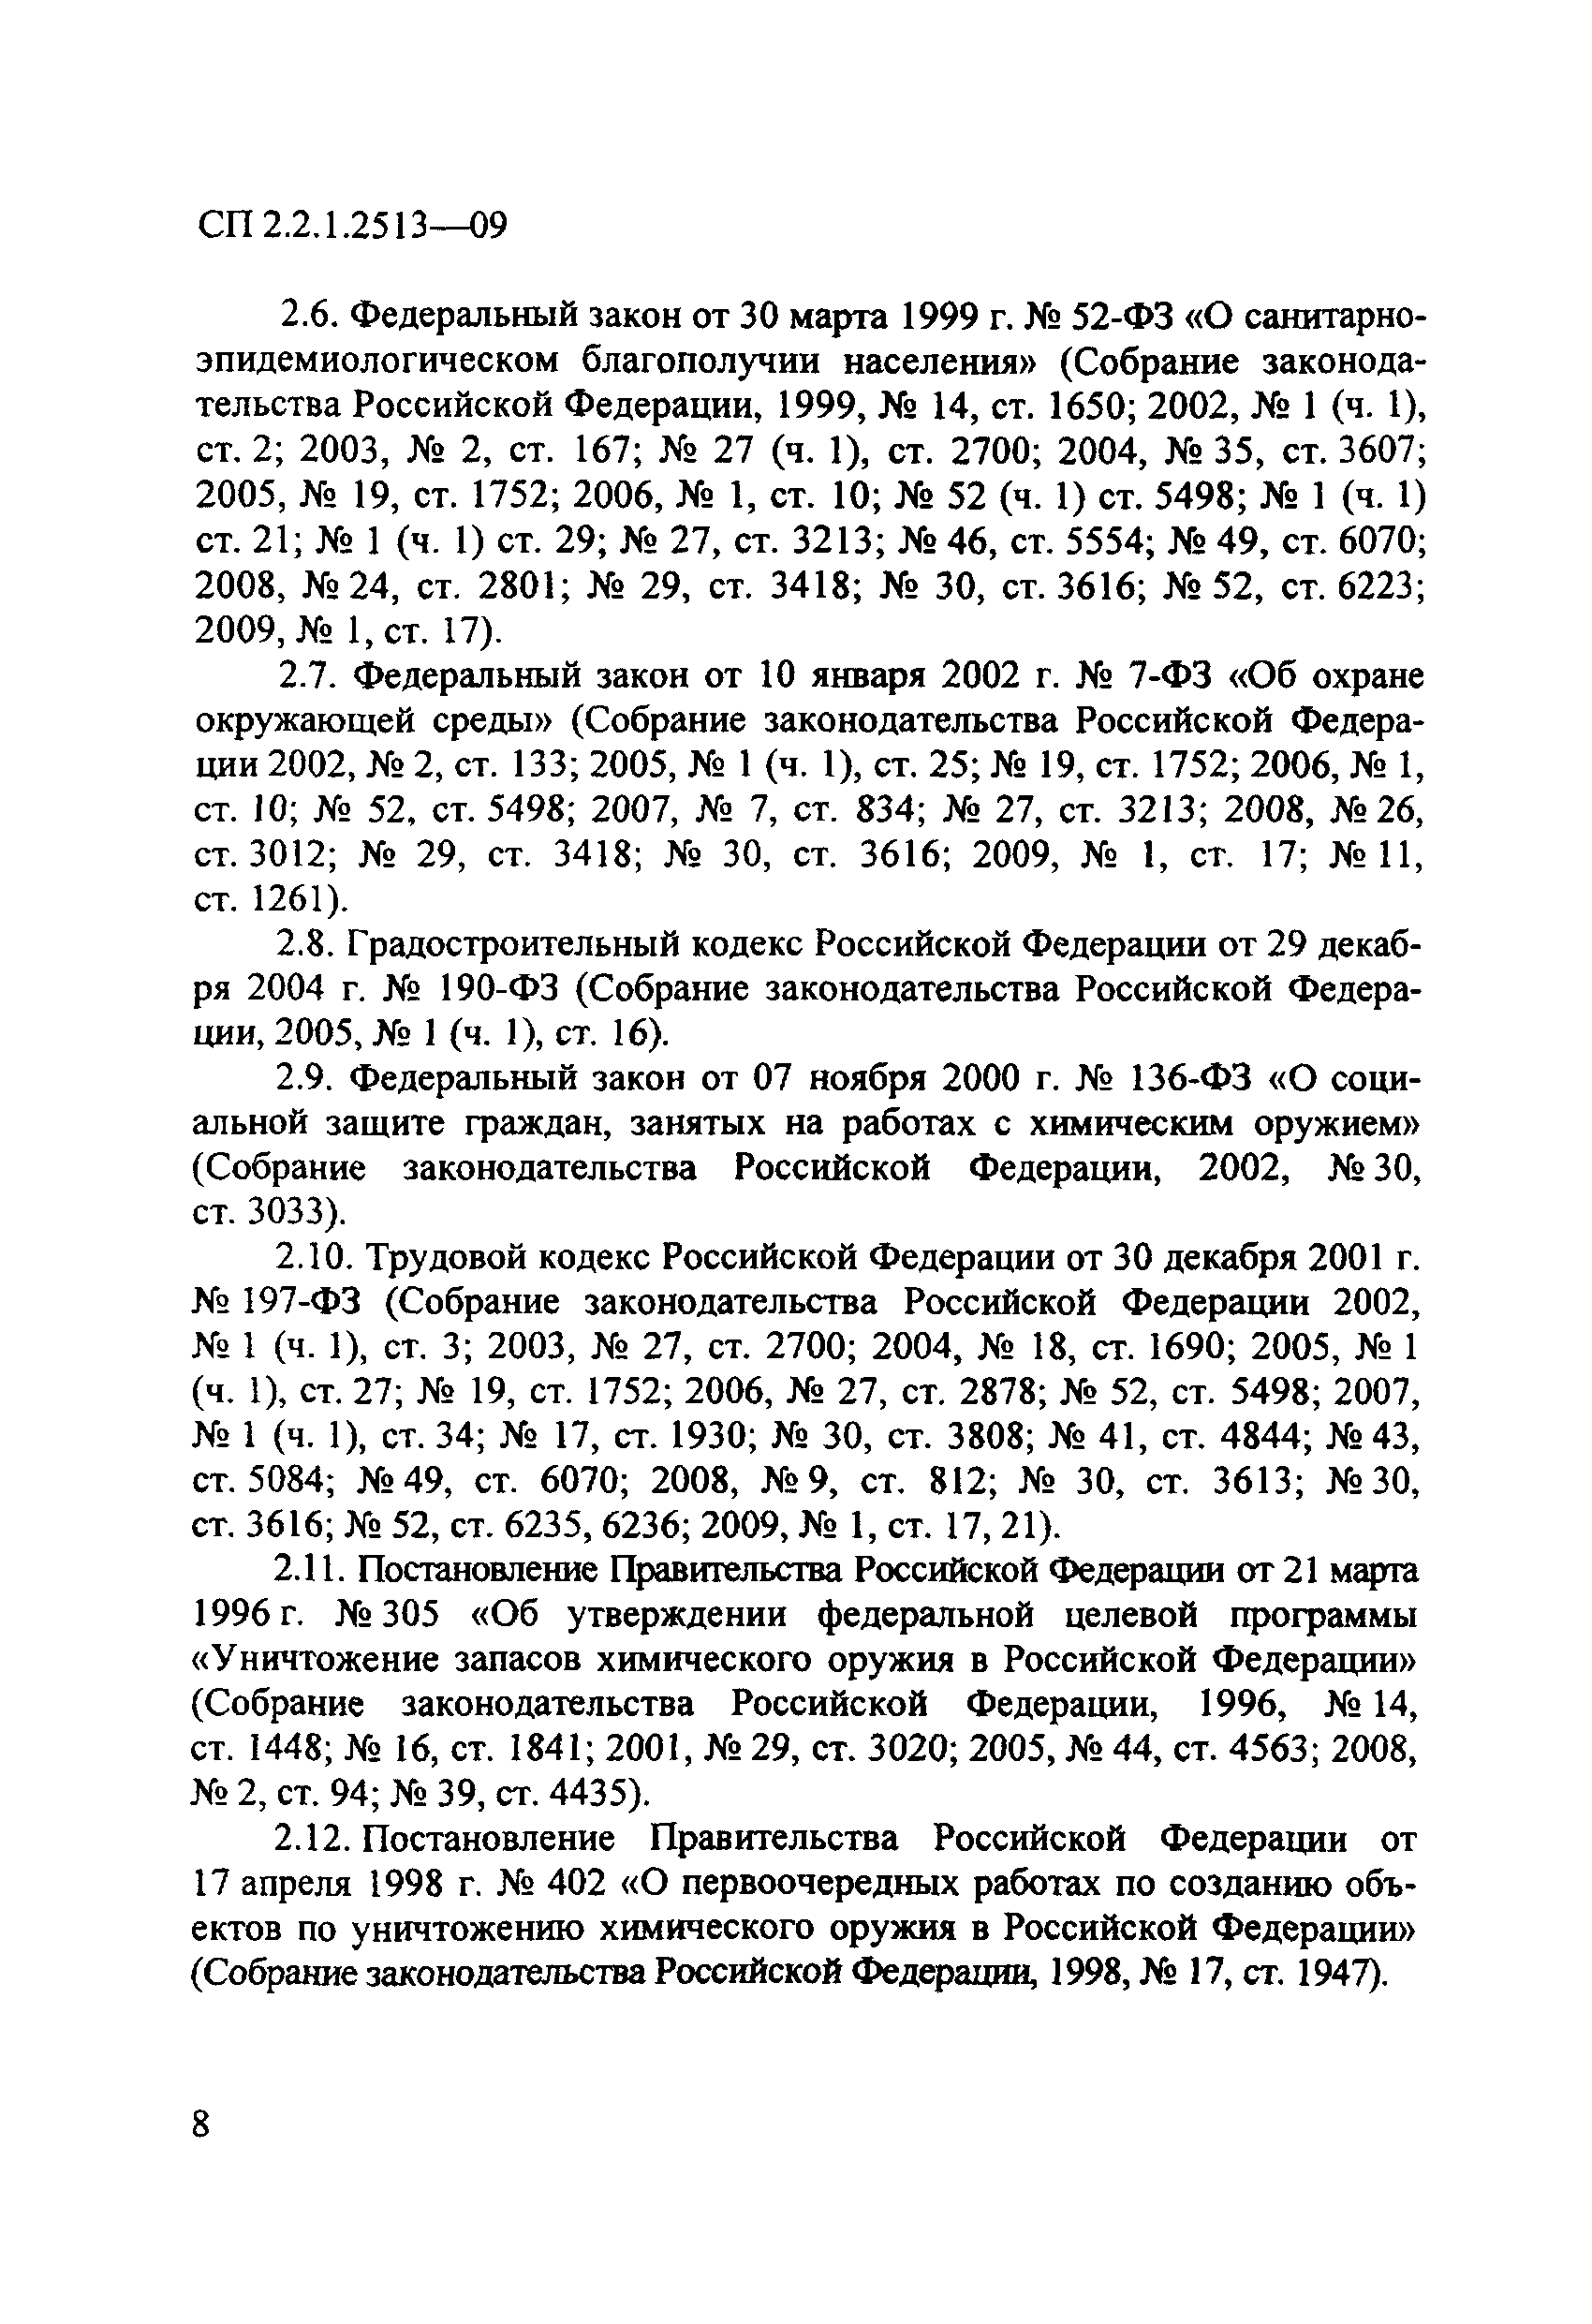 СП 2.2.1.2513-09